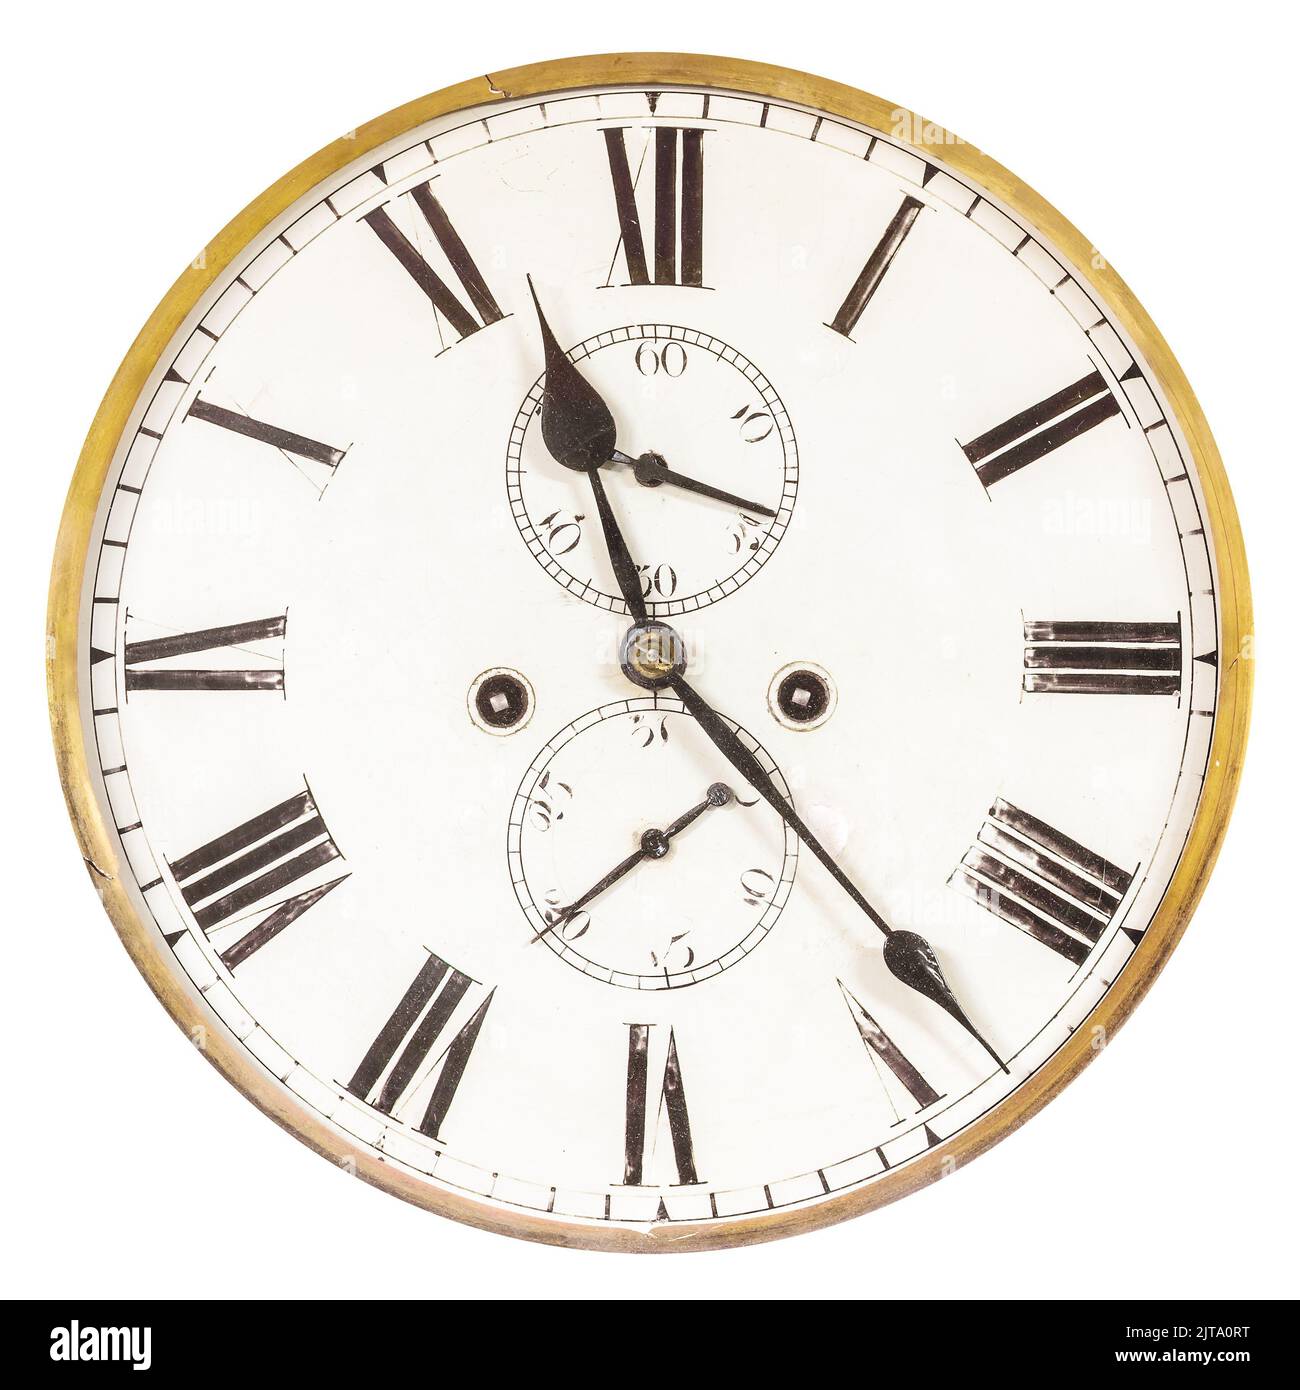 Antico orologio d'epoca isolato su sfondo bianco Foto Stock